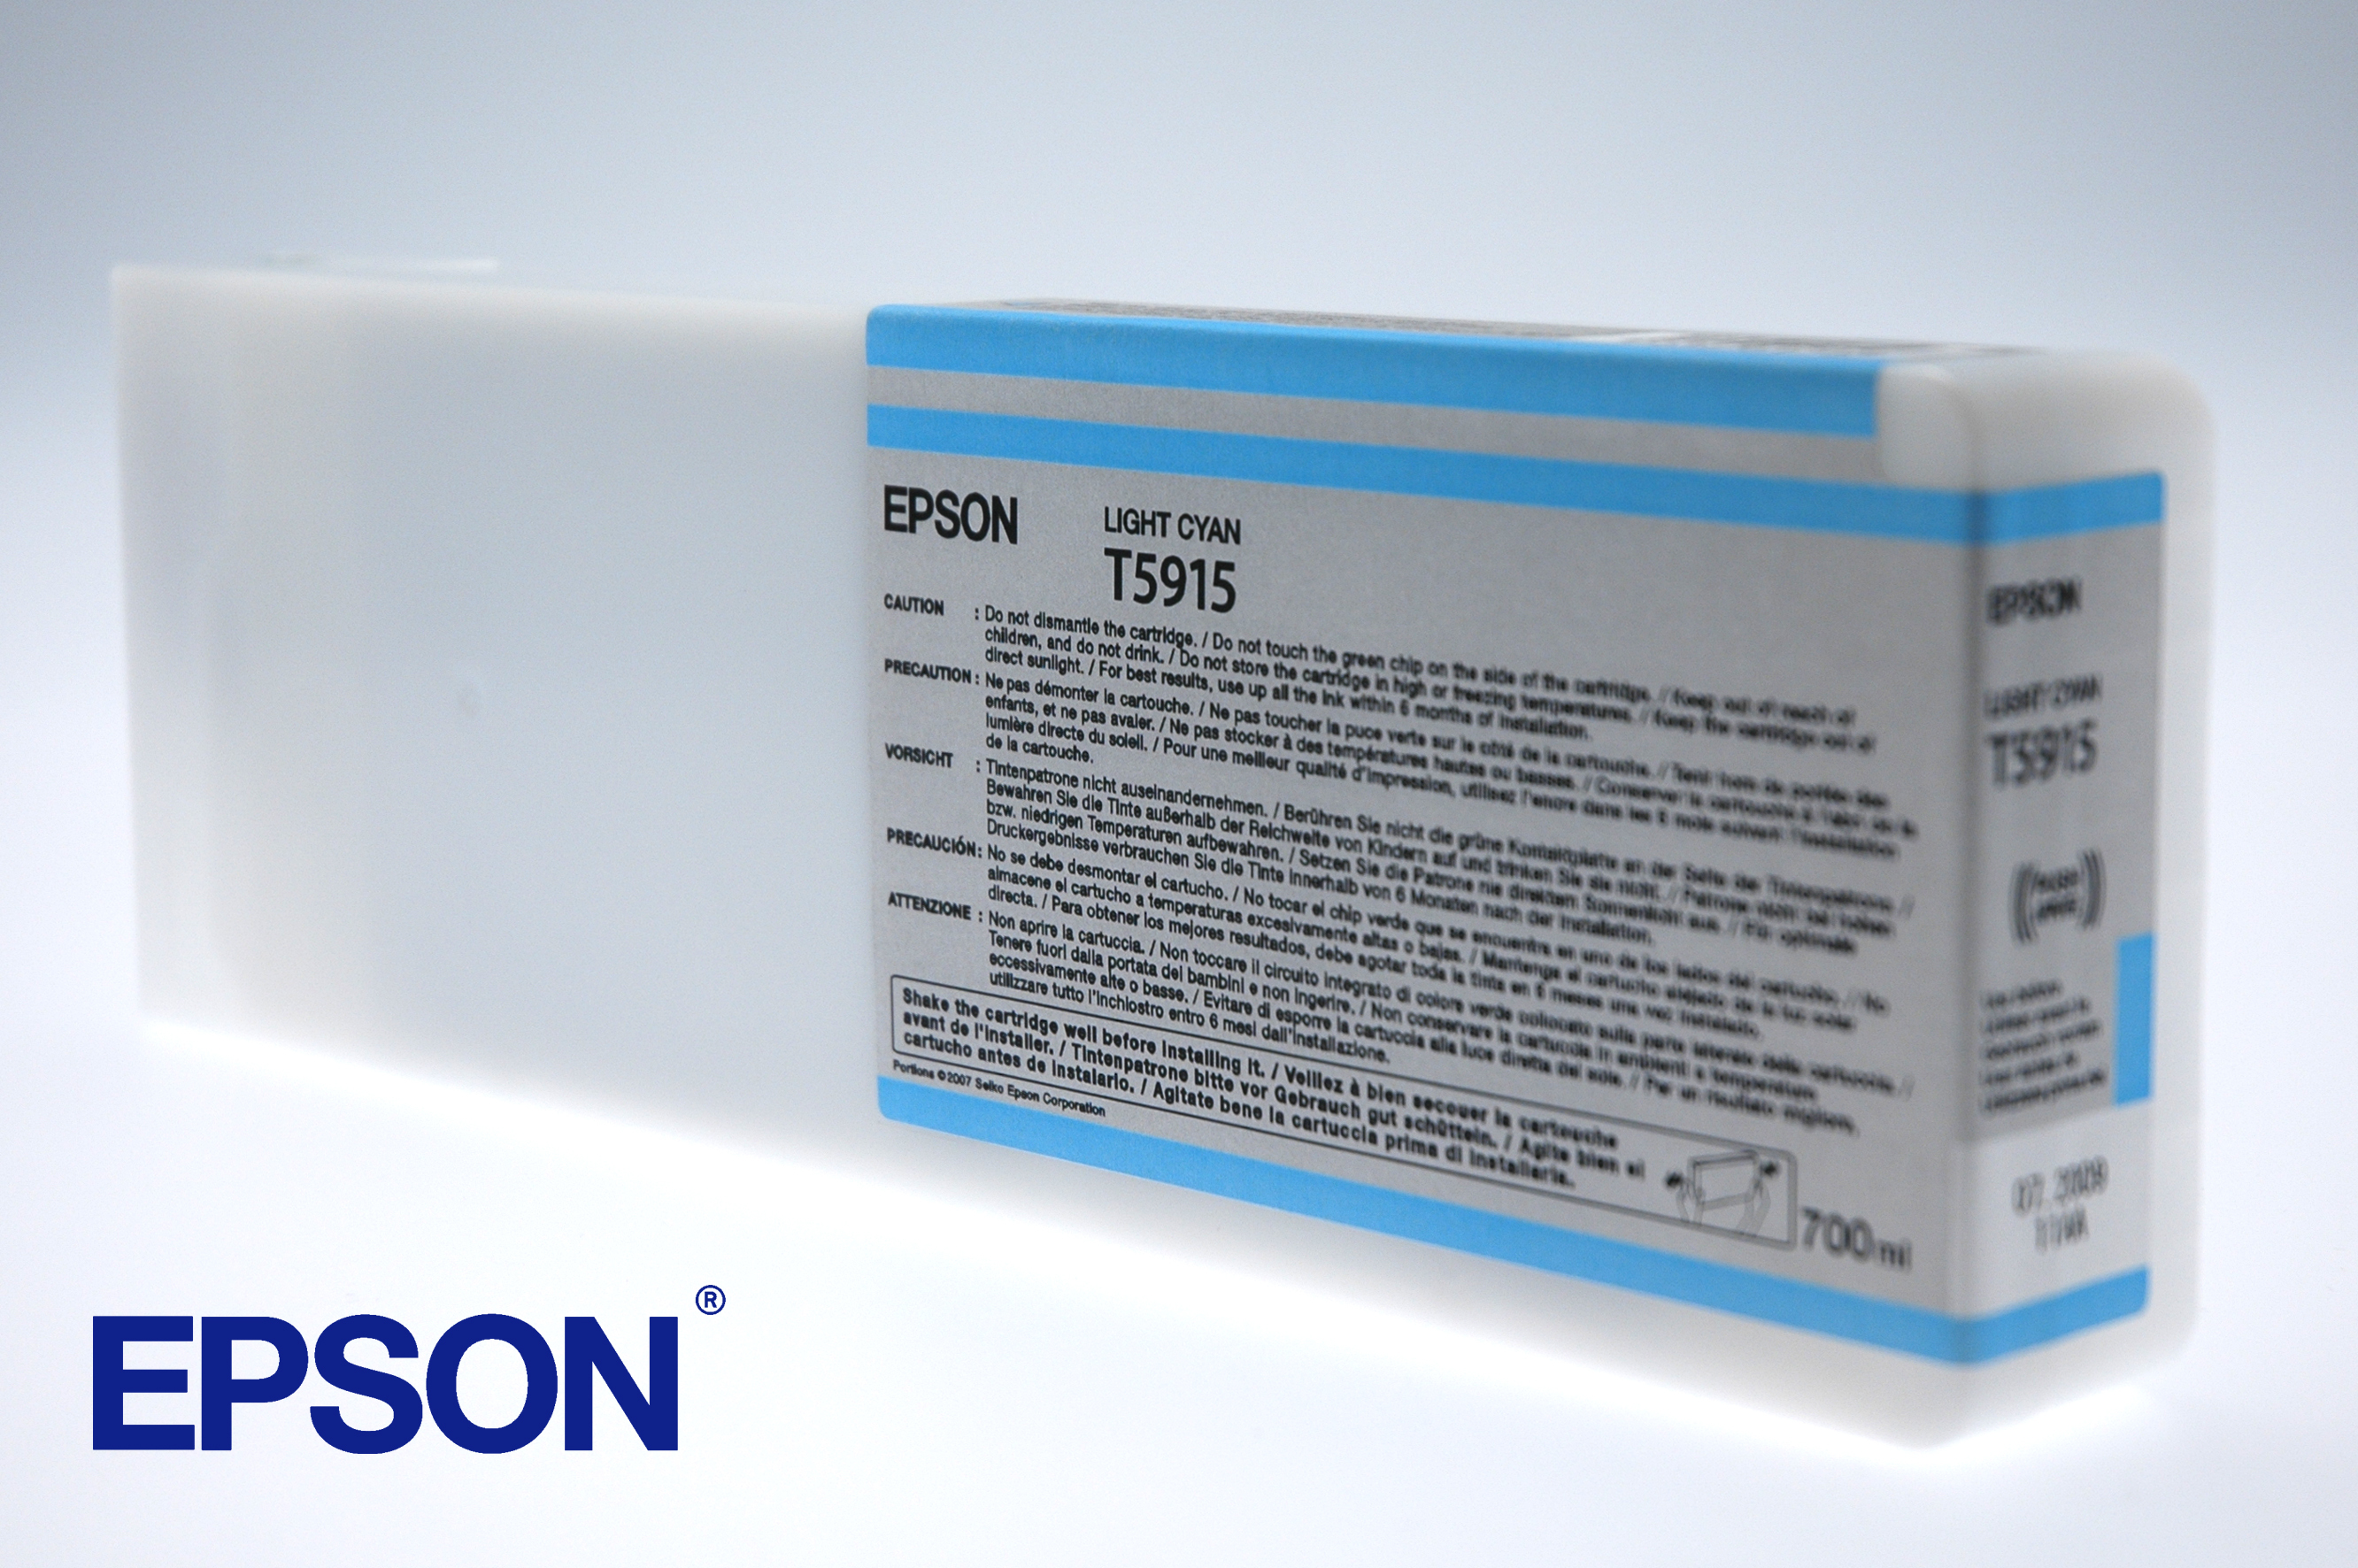 Epson inktpatroon Light Cyan T591500 single pack / Lichtyaan